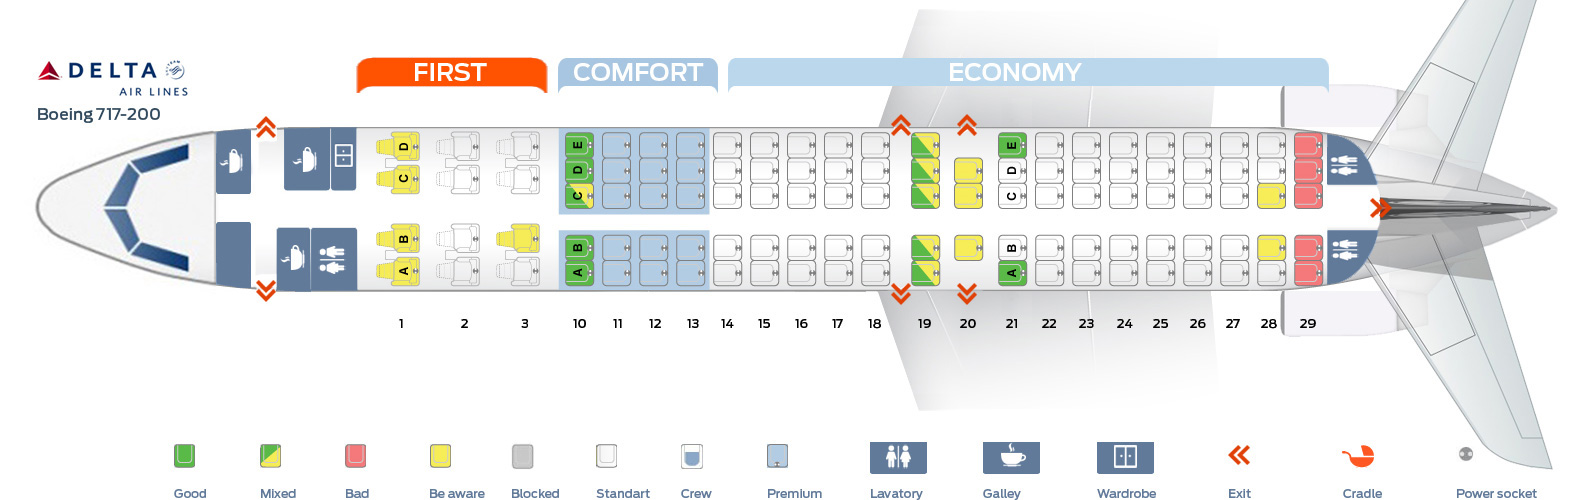 Delta Flight Seating Chart